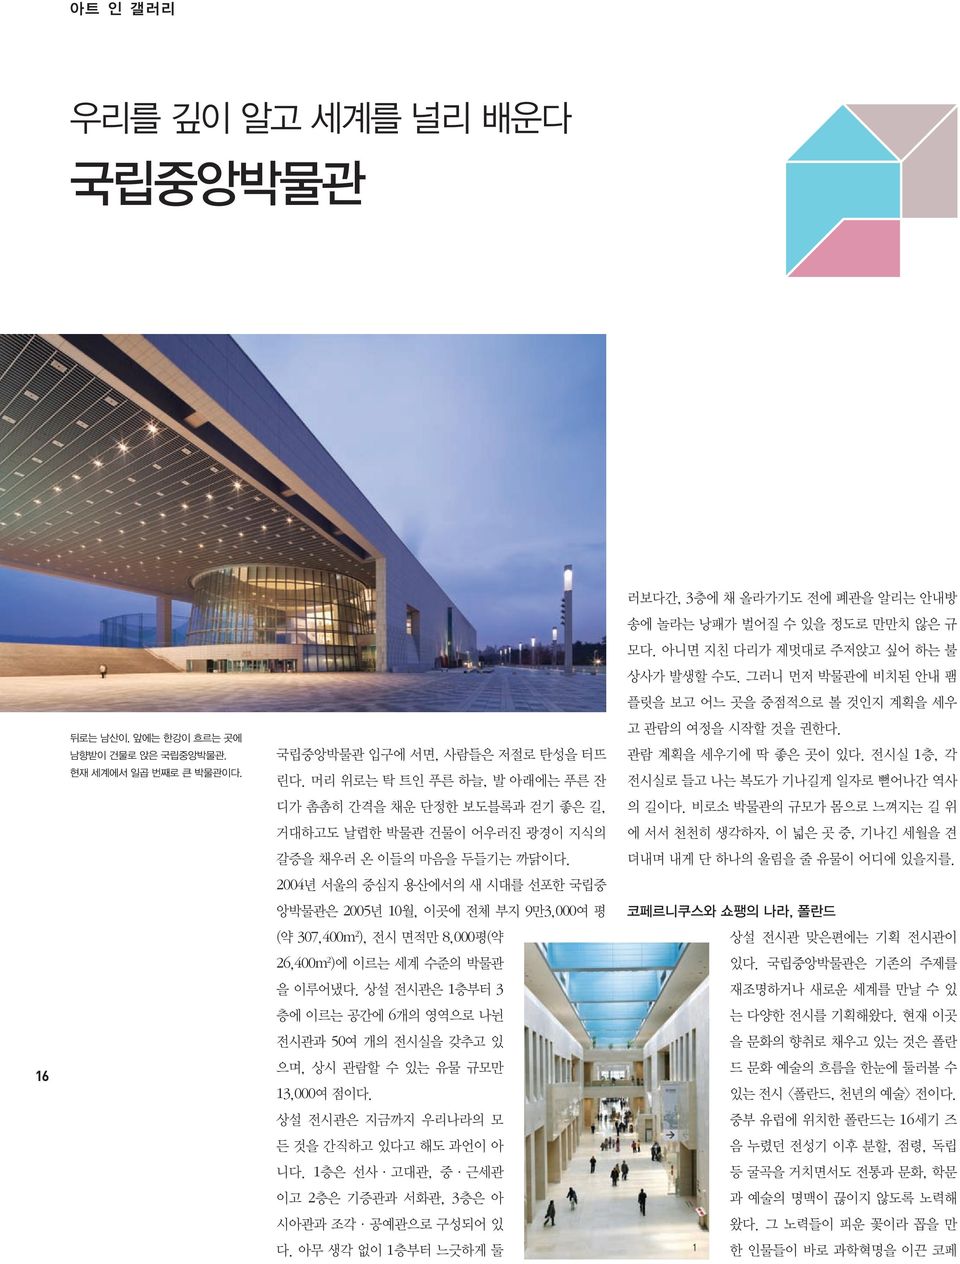 2004년 서울의 중심지 용산에서의 새 시대를 선포한 국립중 앙박물관은 2005년 10월, 이곳에 전체 부지 9만3,000여 평 (약 307,400m 2 ), 전시 면적만 8,000평(약 26,400m 2 )에 이르는 세계 수준의 박물관 을 이루어냈다.